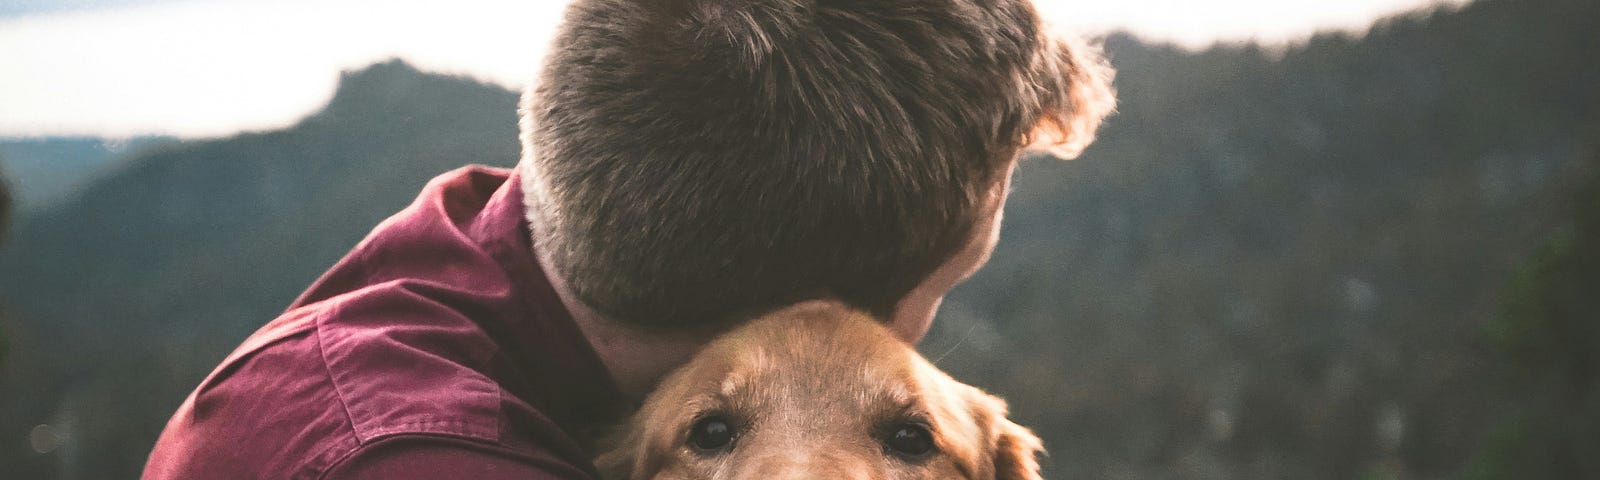 A man cuddling a happy doggo